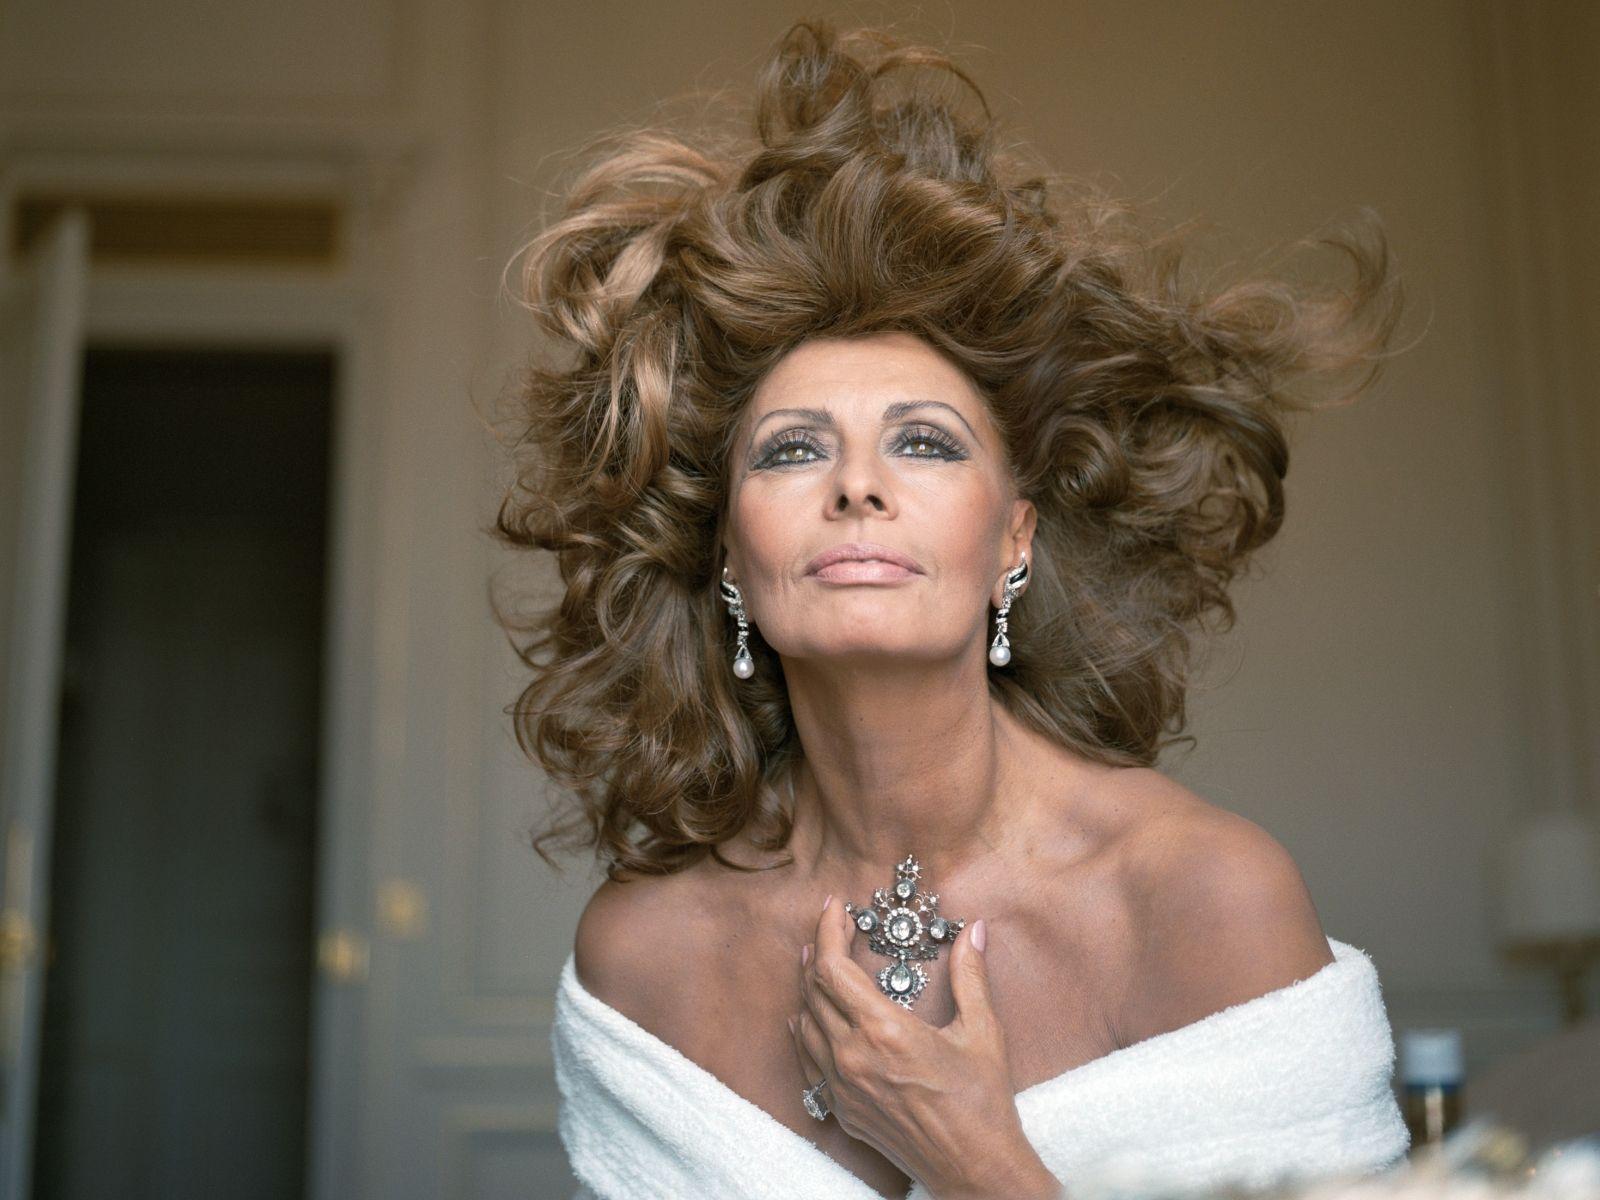 Sophia Loren Wallpaper Photo HD 60313 1600x1200 px